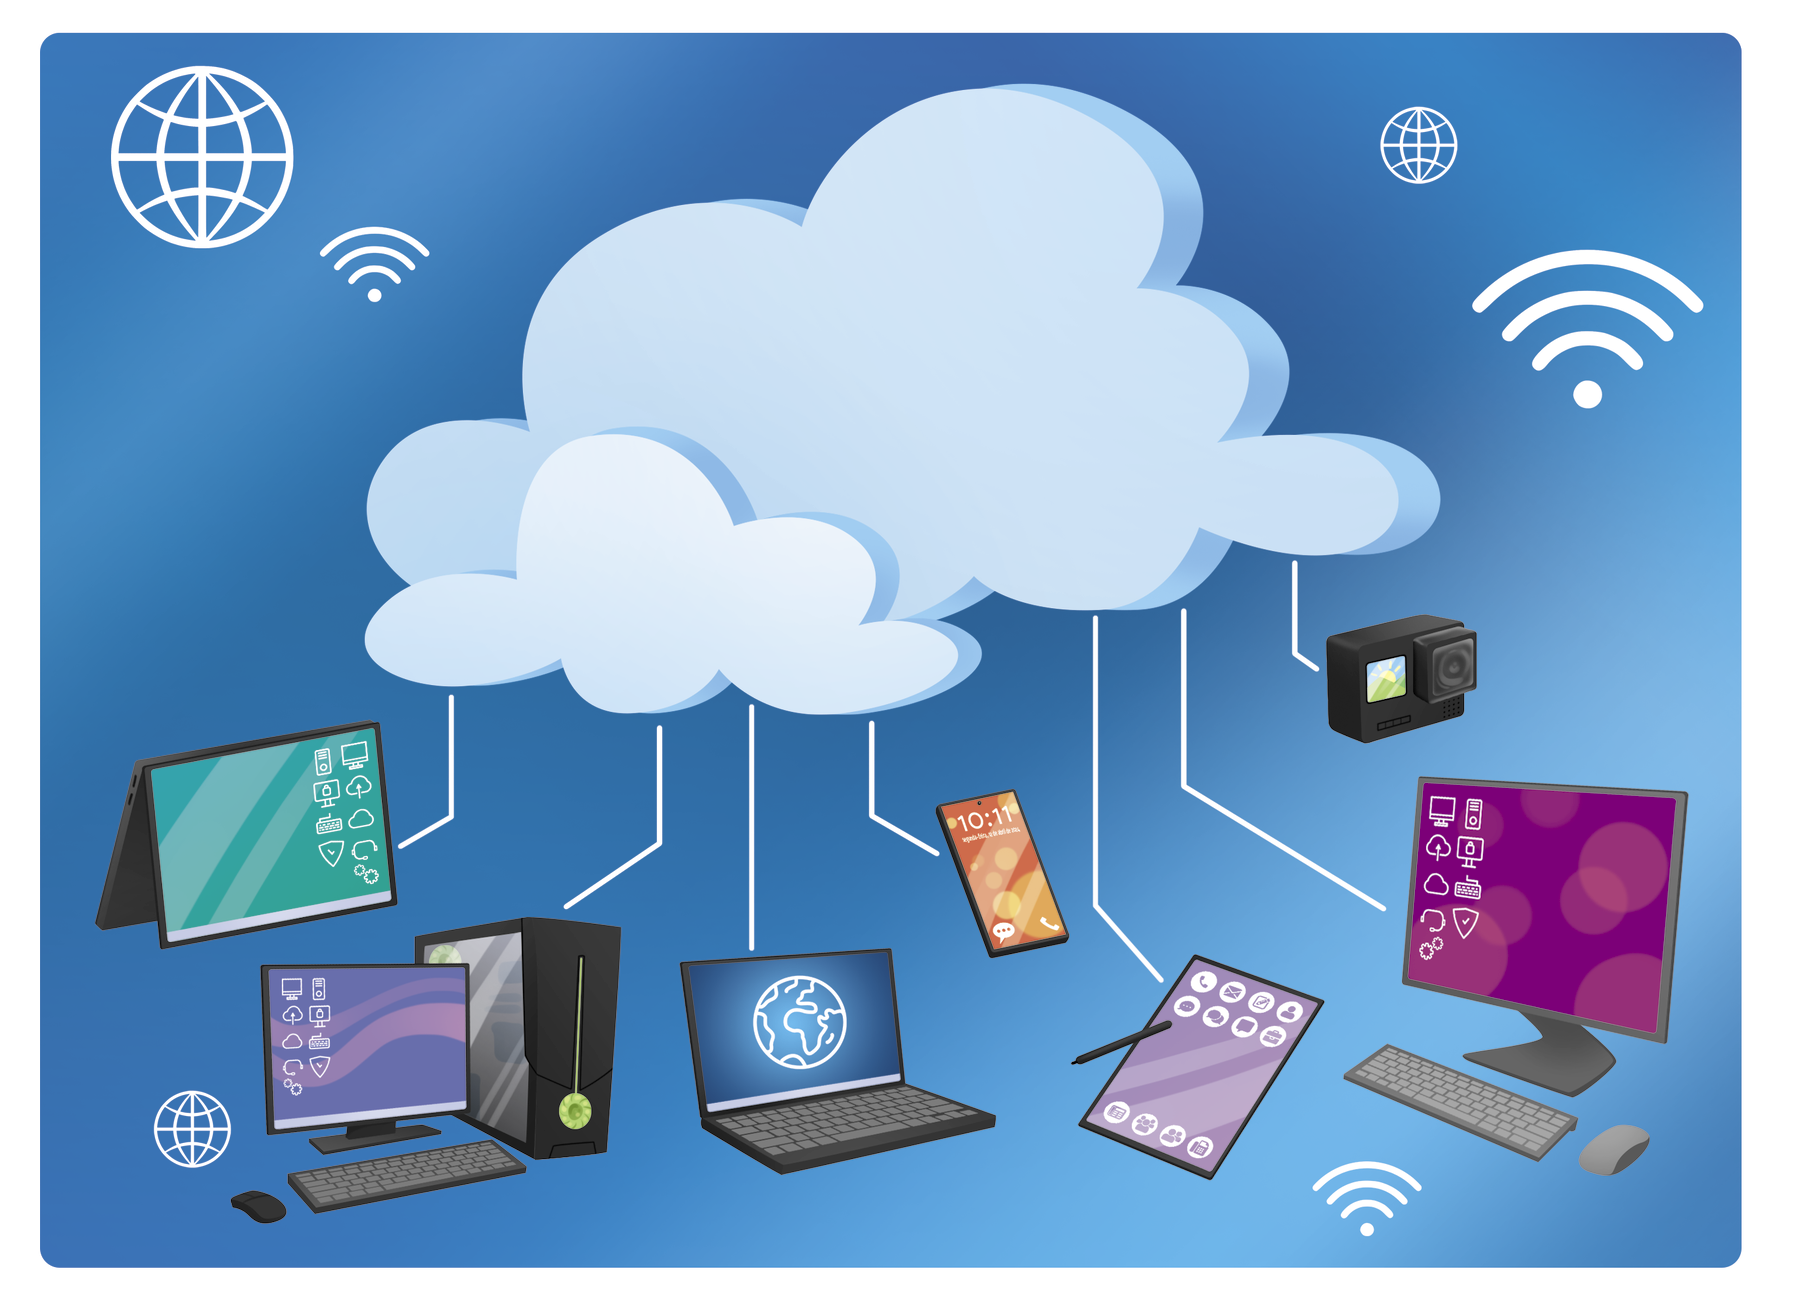 Ilustração. Ao centro duas nuvens. Da esquerda para a direita, estão conectados a essas nuvens por meio de fios: um notebook touchscreen, um desktop com CPU, um notebook convencional, um celular, um tablet, um desktop sem CPU e uma câmera fotográfica. Ao redor das nuvens estão presentes símbolos de sinais de wifi e de globos de internet.